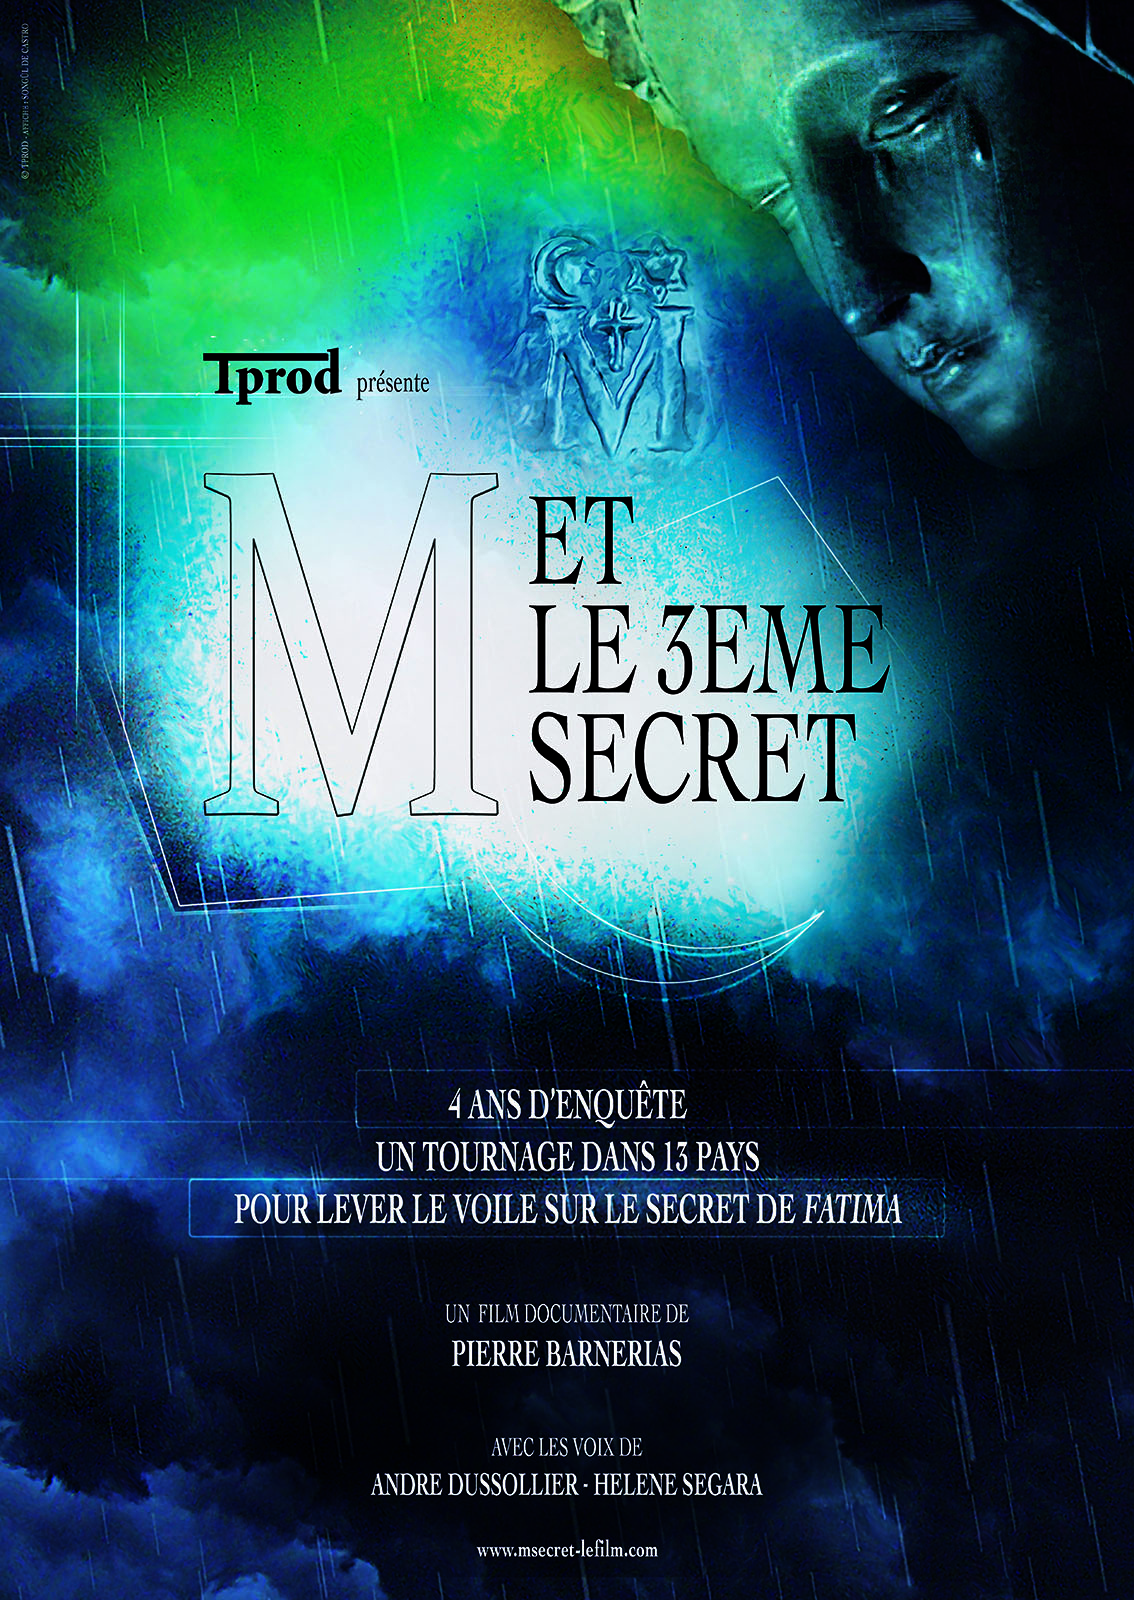 Soirée témoignages autour du film “M et le 3ème secret” le 13 décembre 2018 à Bayonne (64)